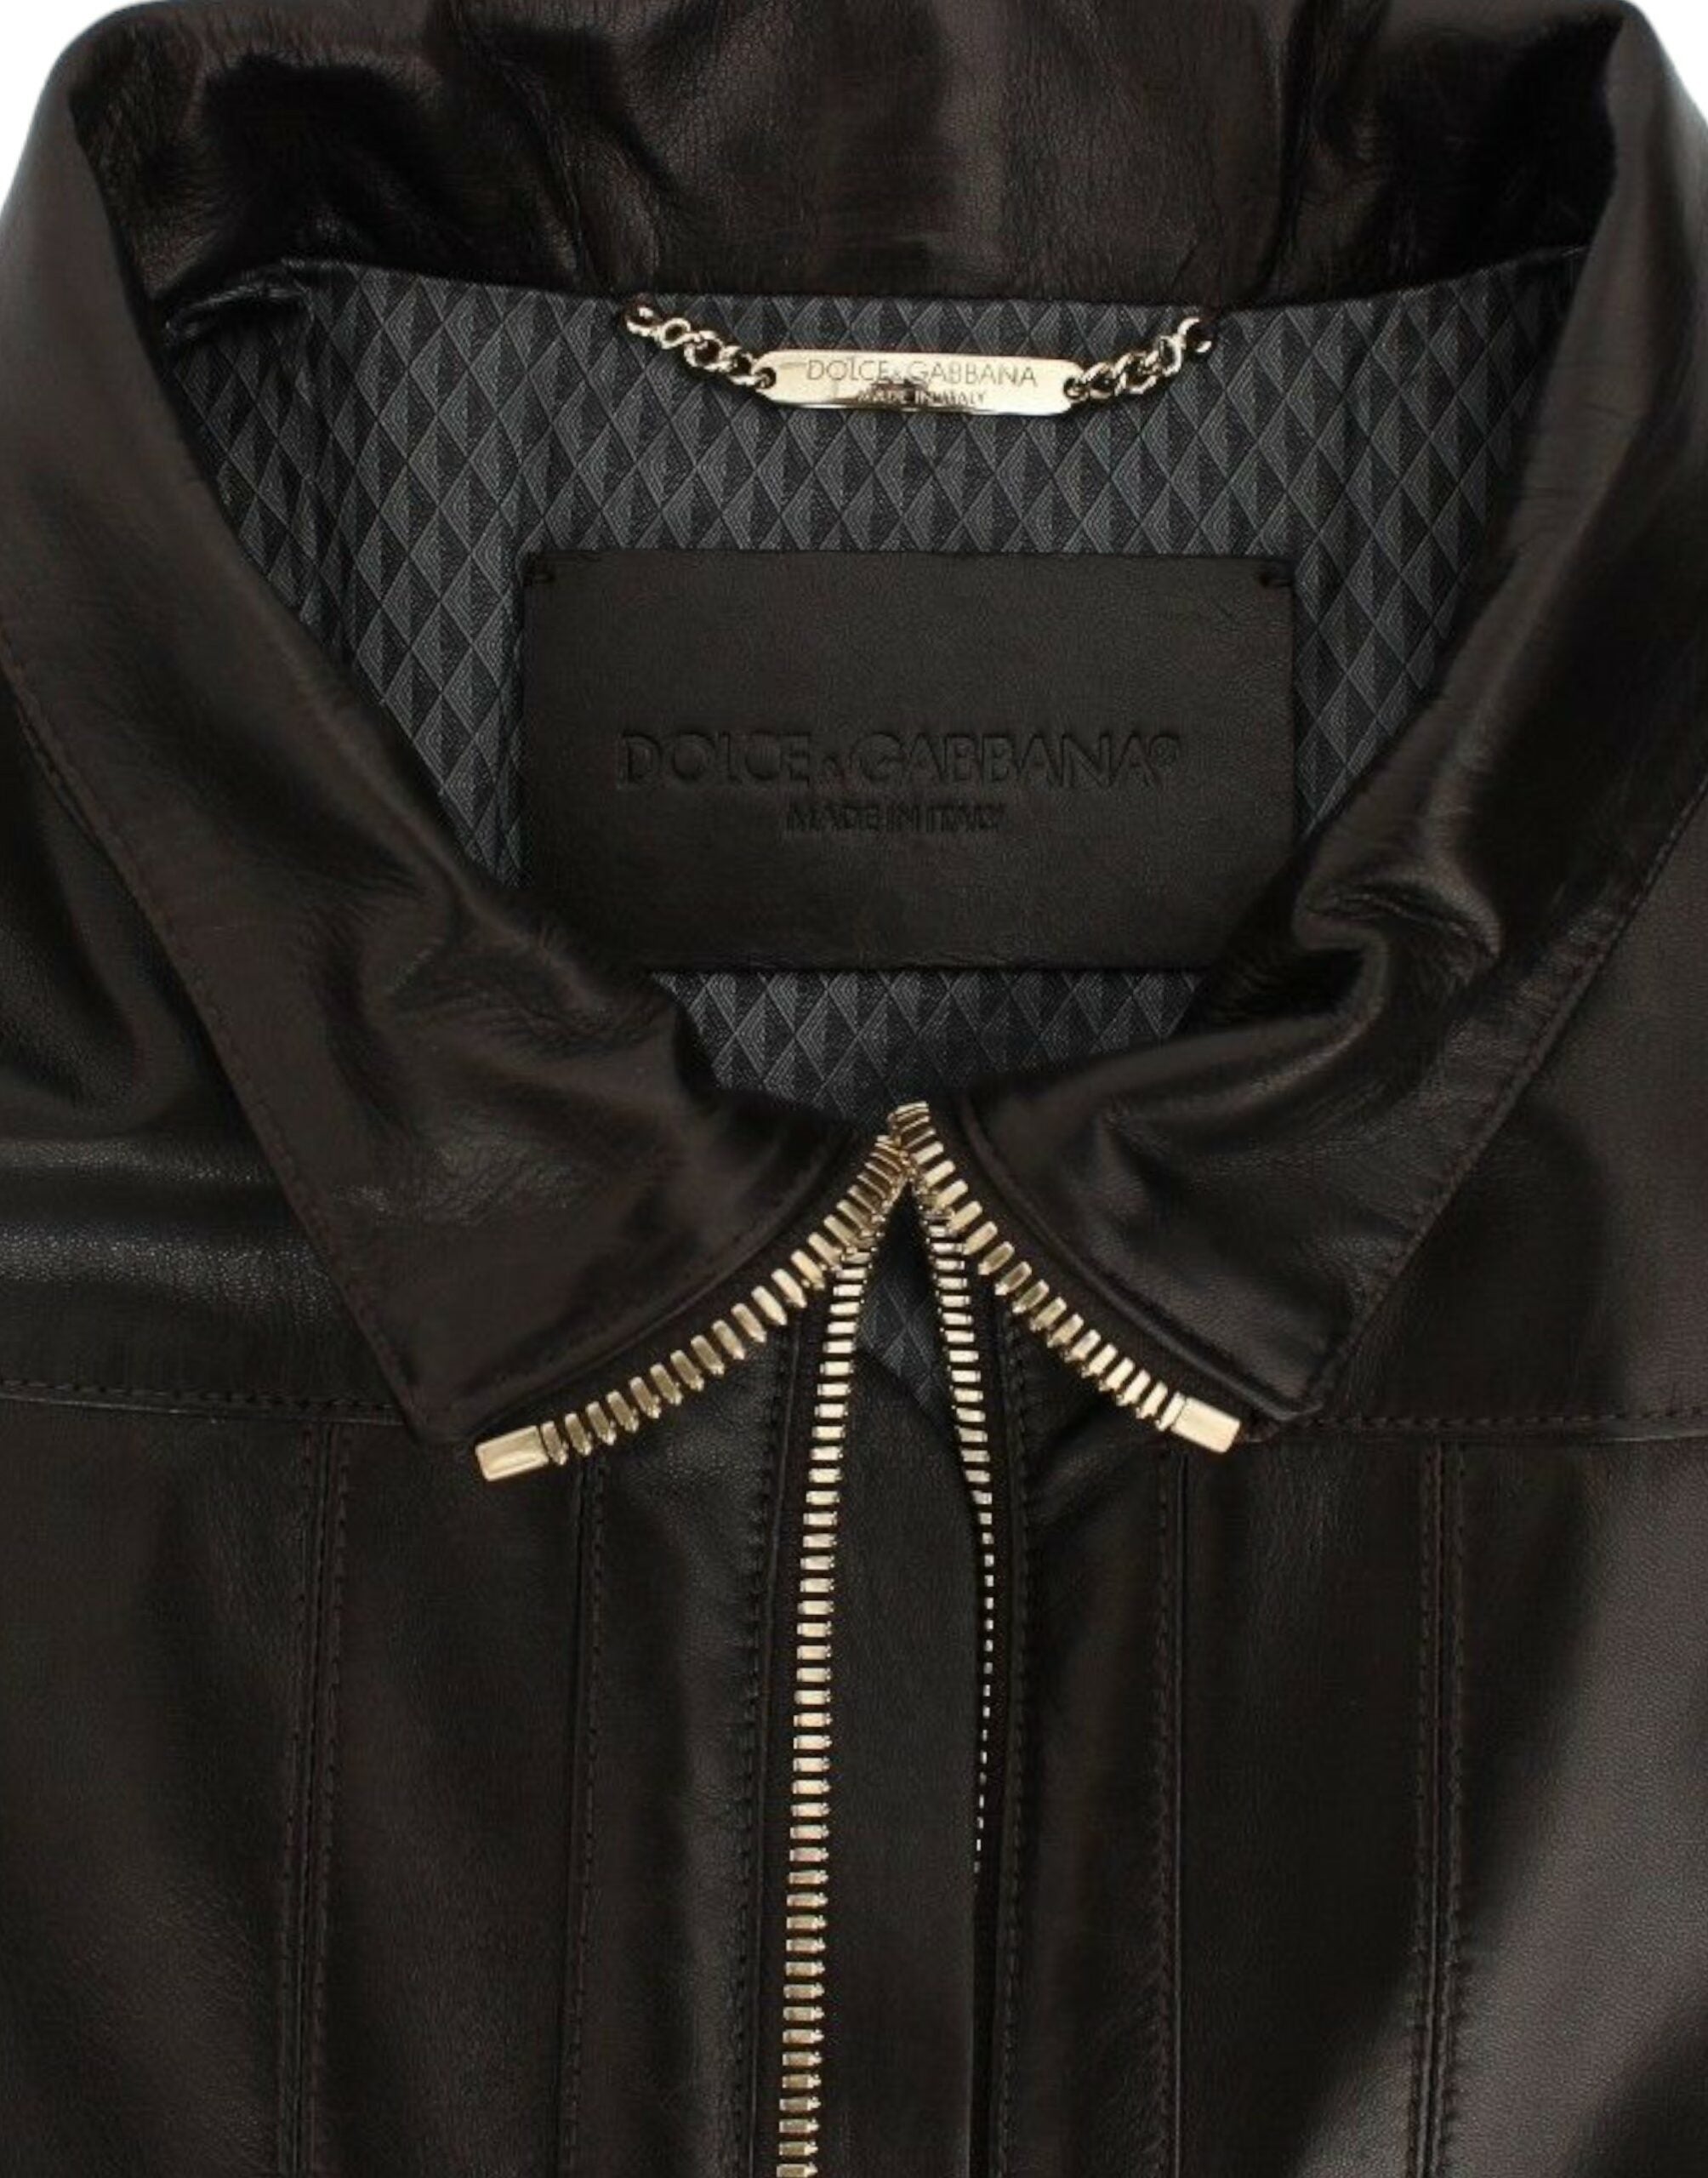 Dolce & Gabbana Lambskin Læder Zipper Jakke & Frakke-Modeoutlet